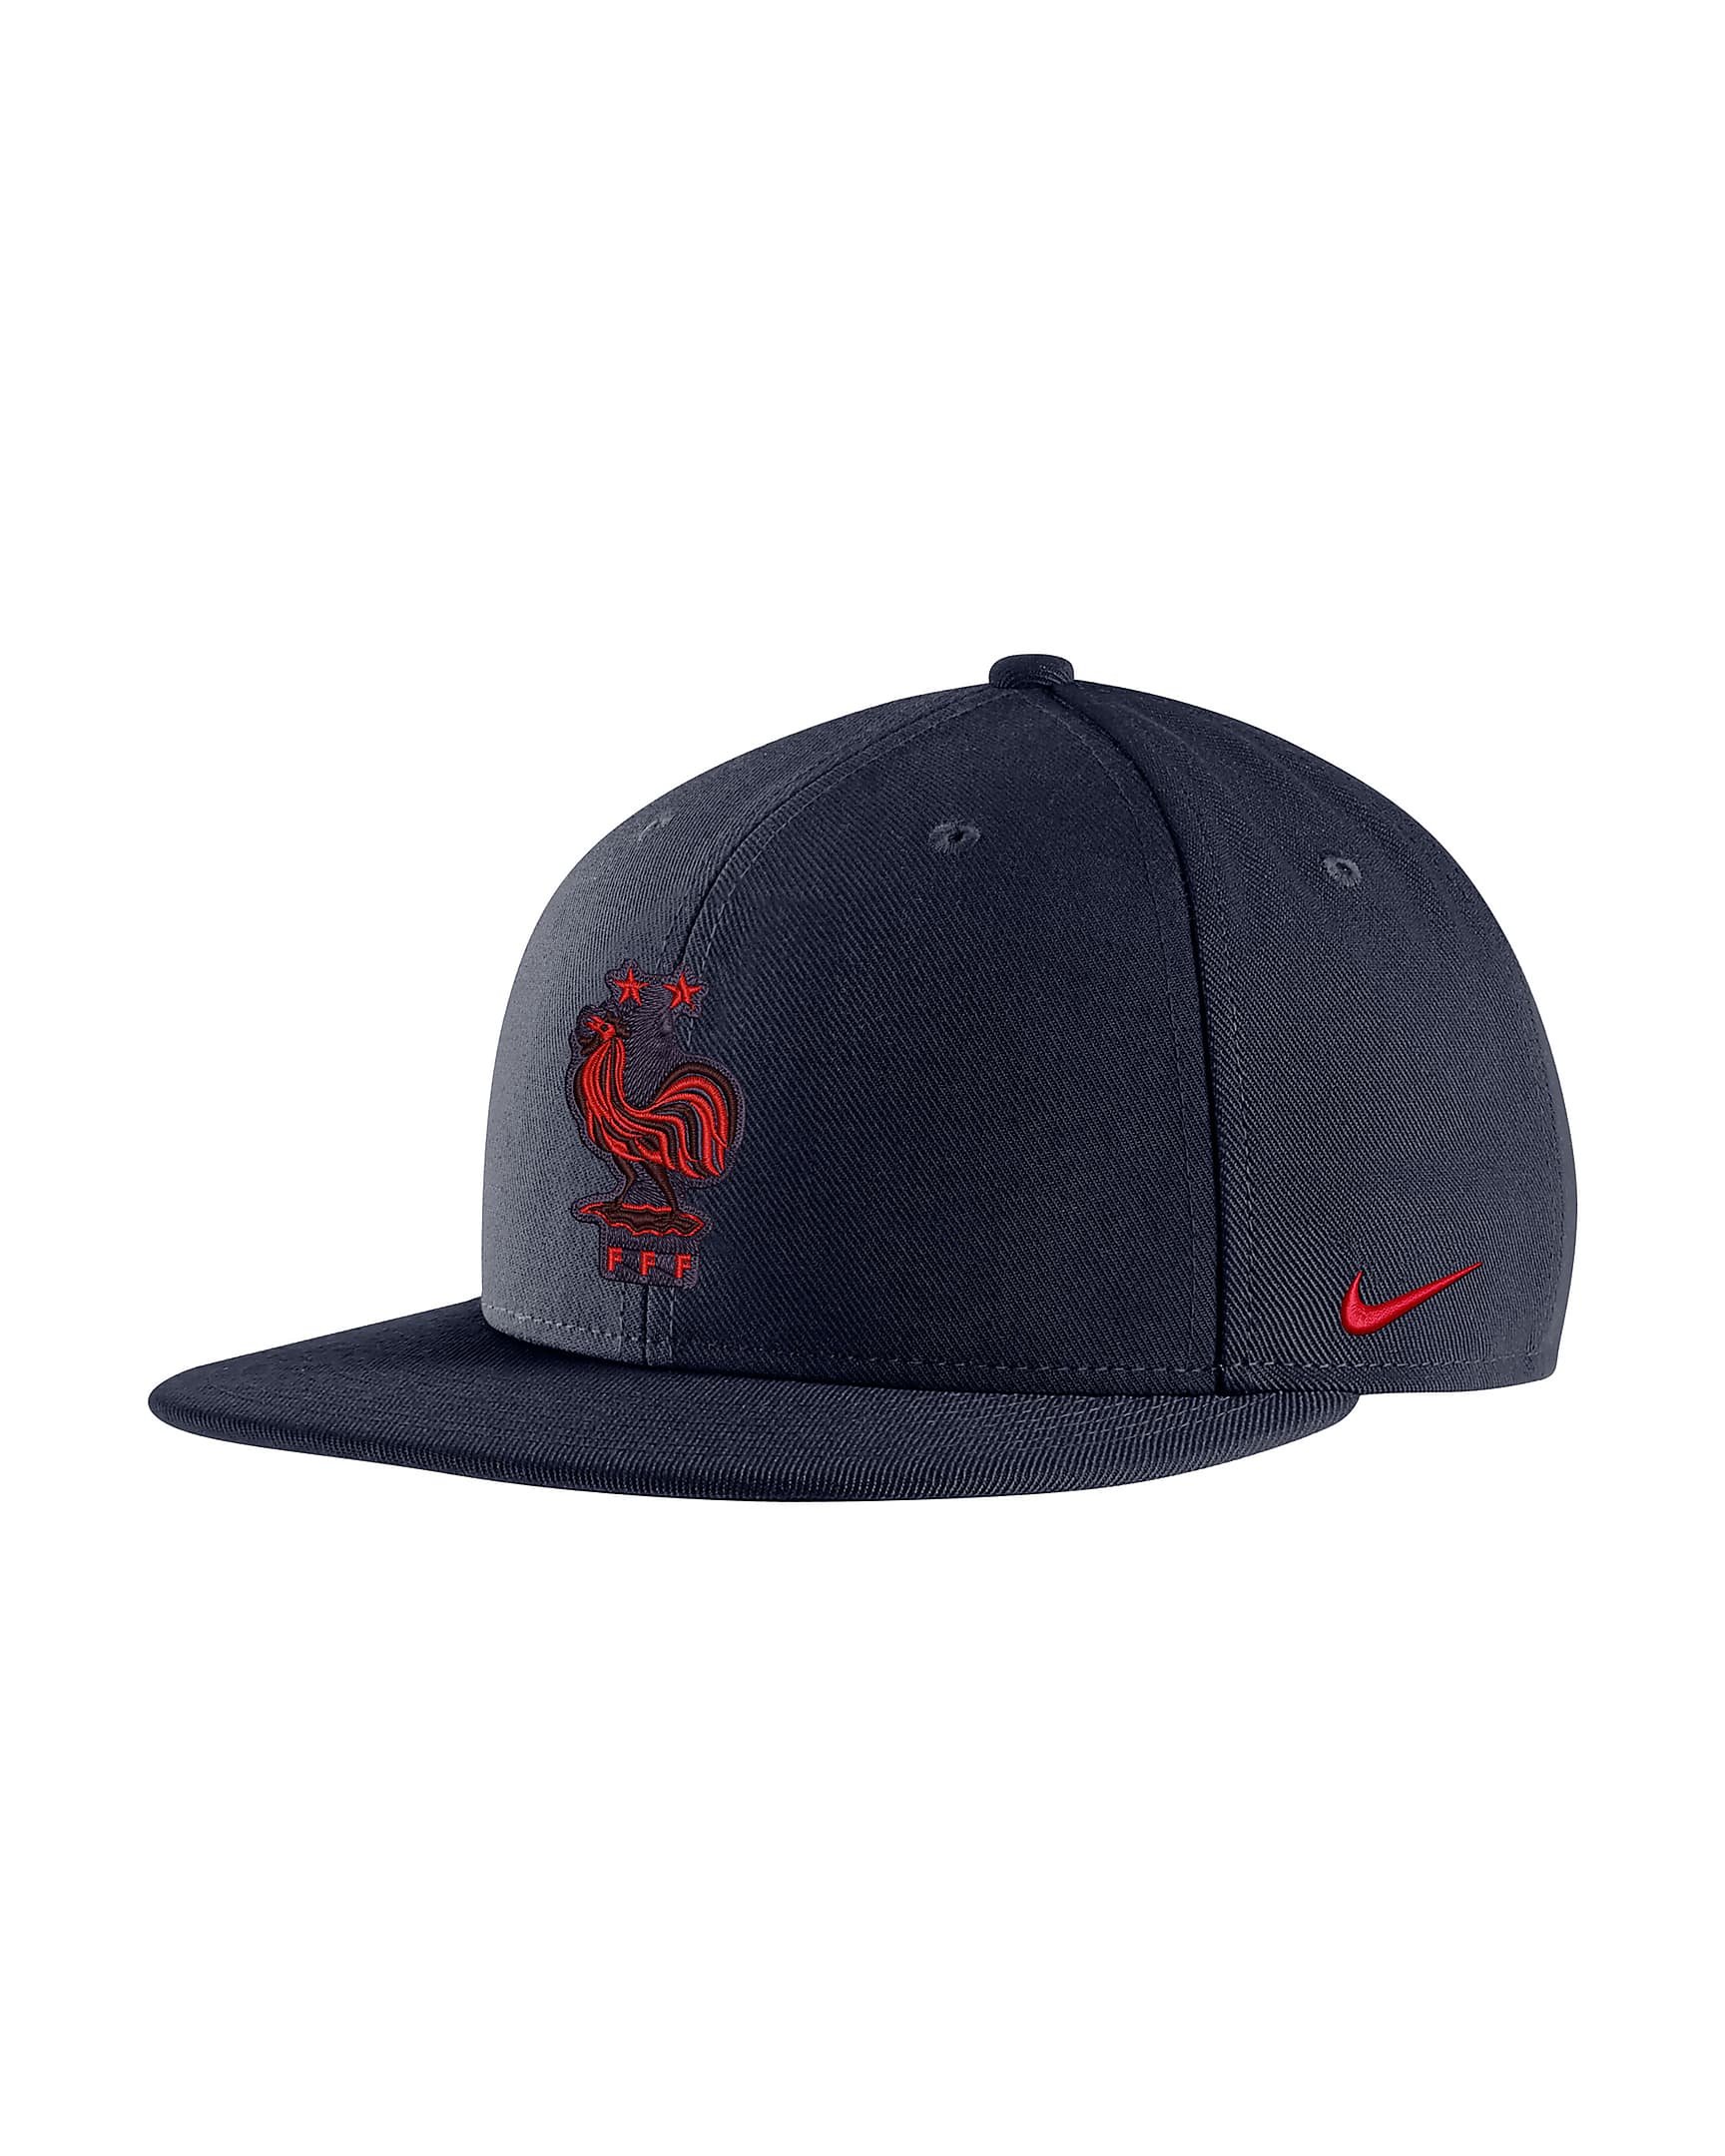 FFF Pro Big Kids' Snapback Hat. Nike.com